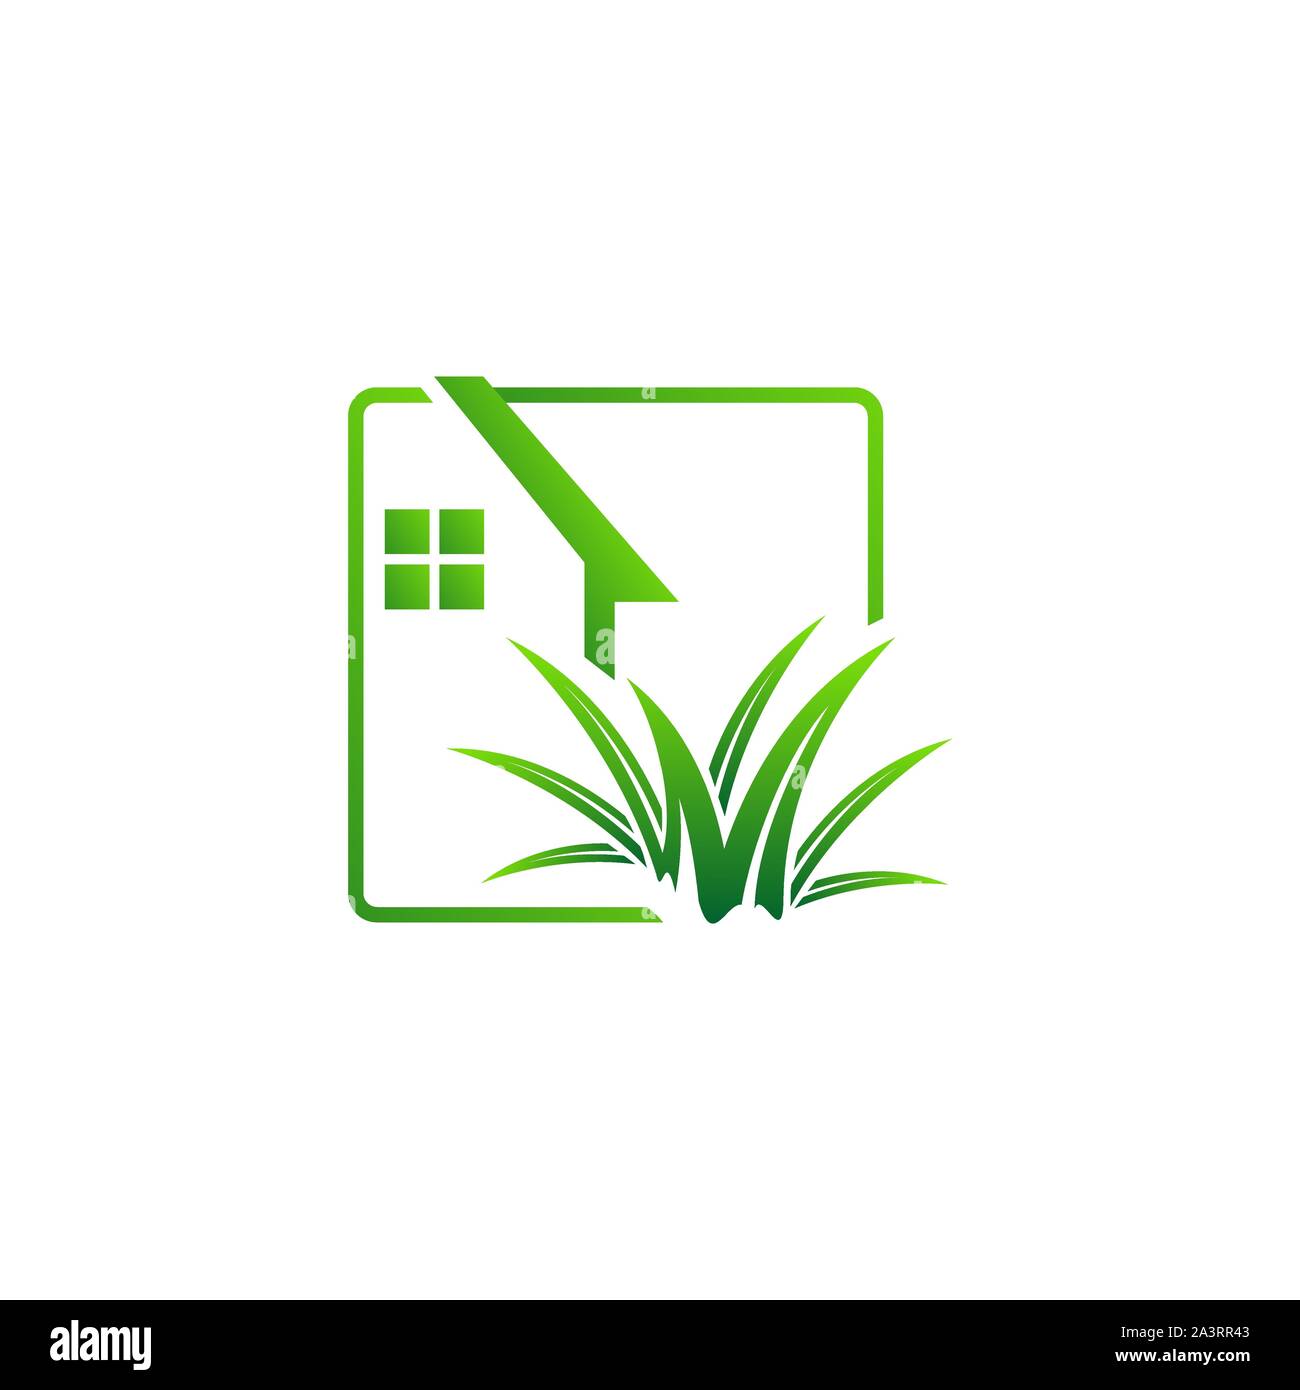 Gartenbau Landschaftsbau Logo Design vector Rasen und Haus Abbildungen Stock Vektor